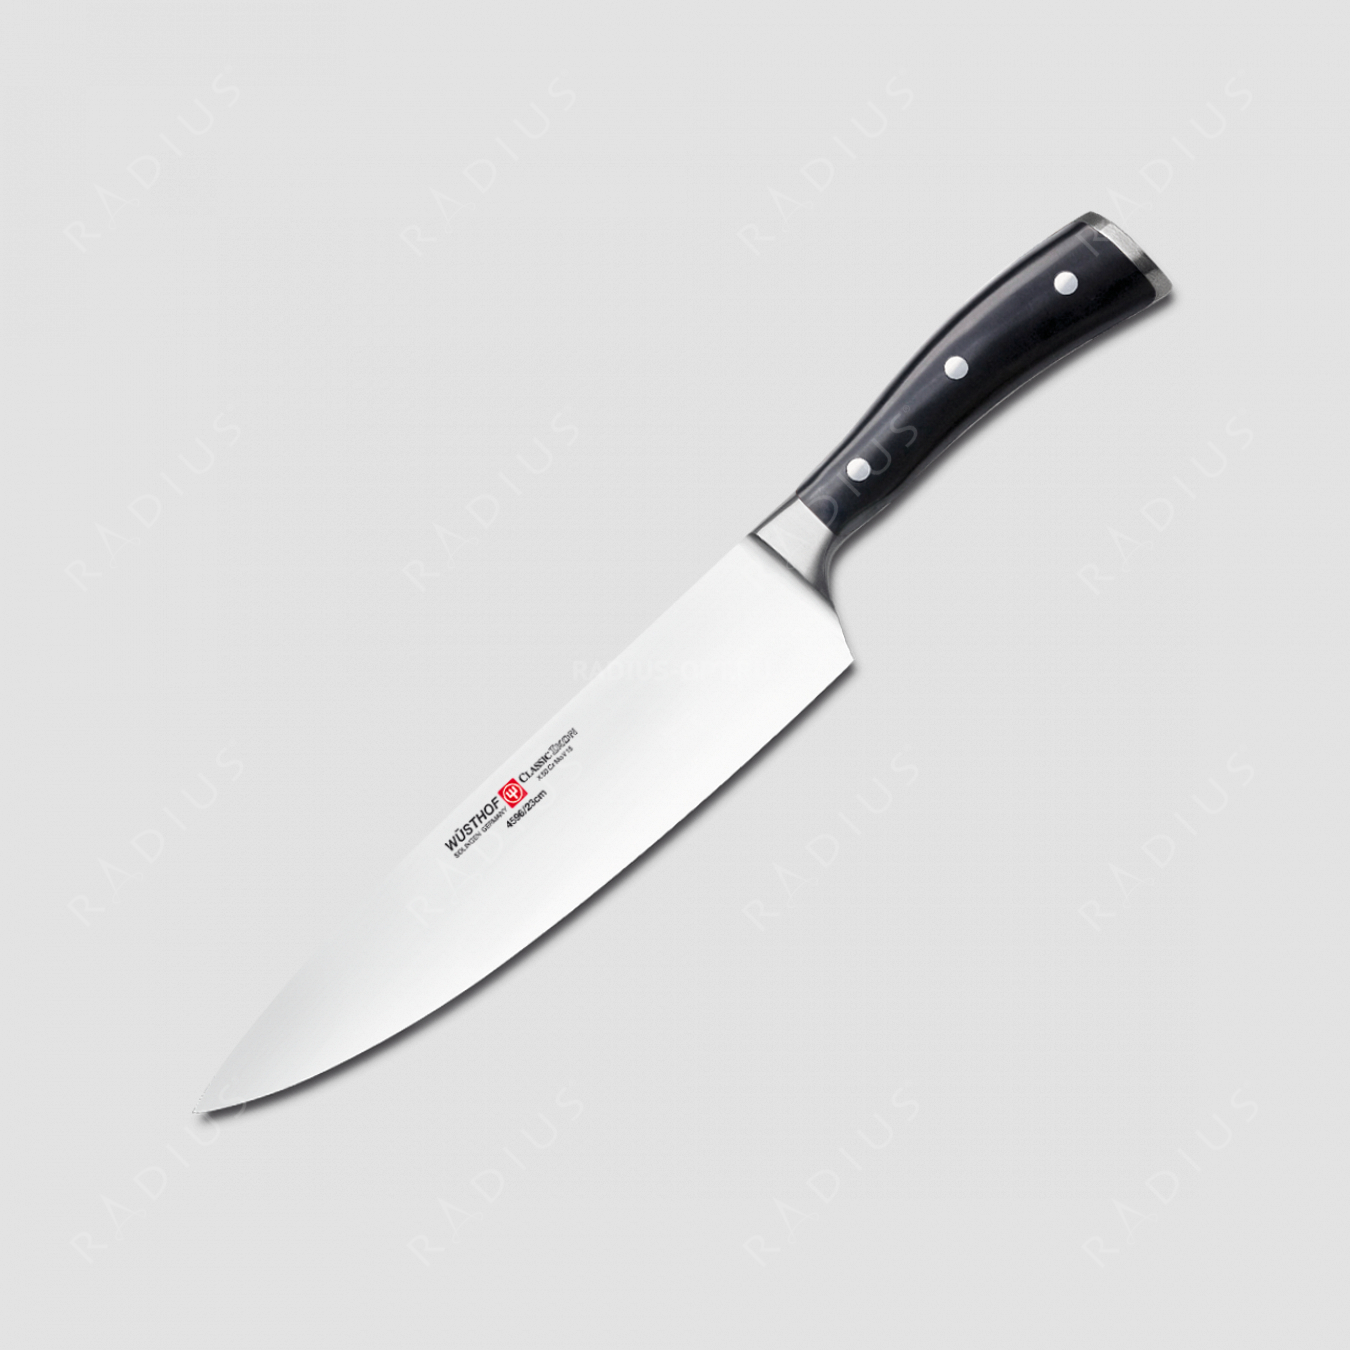 Профессиональный поварской кухонный нож 23 см, серия Classic Ikon, WUESTHOF, Золинген, Германия